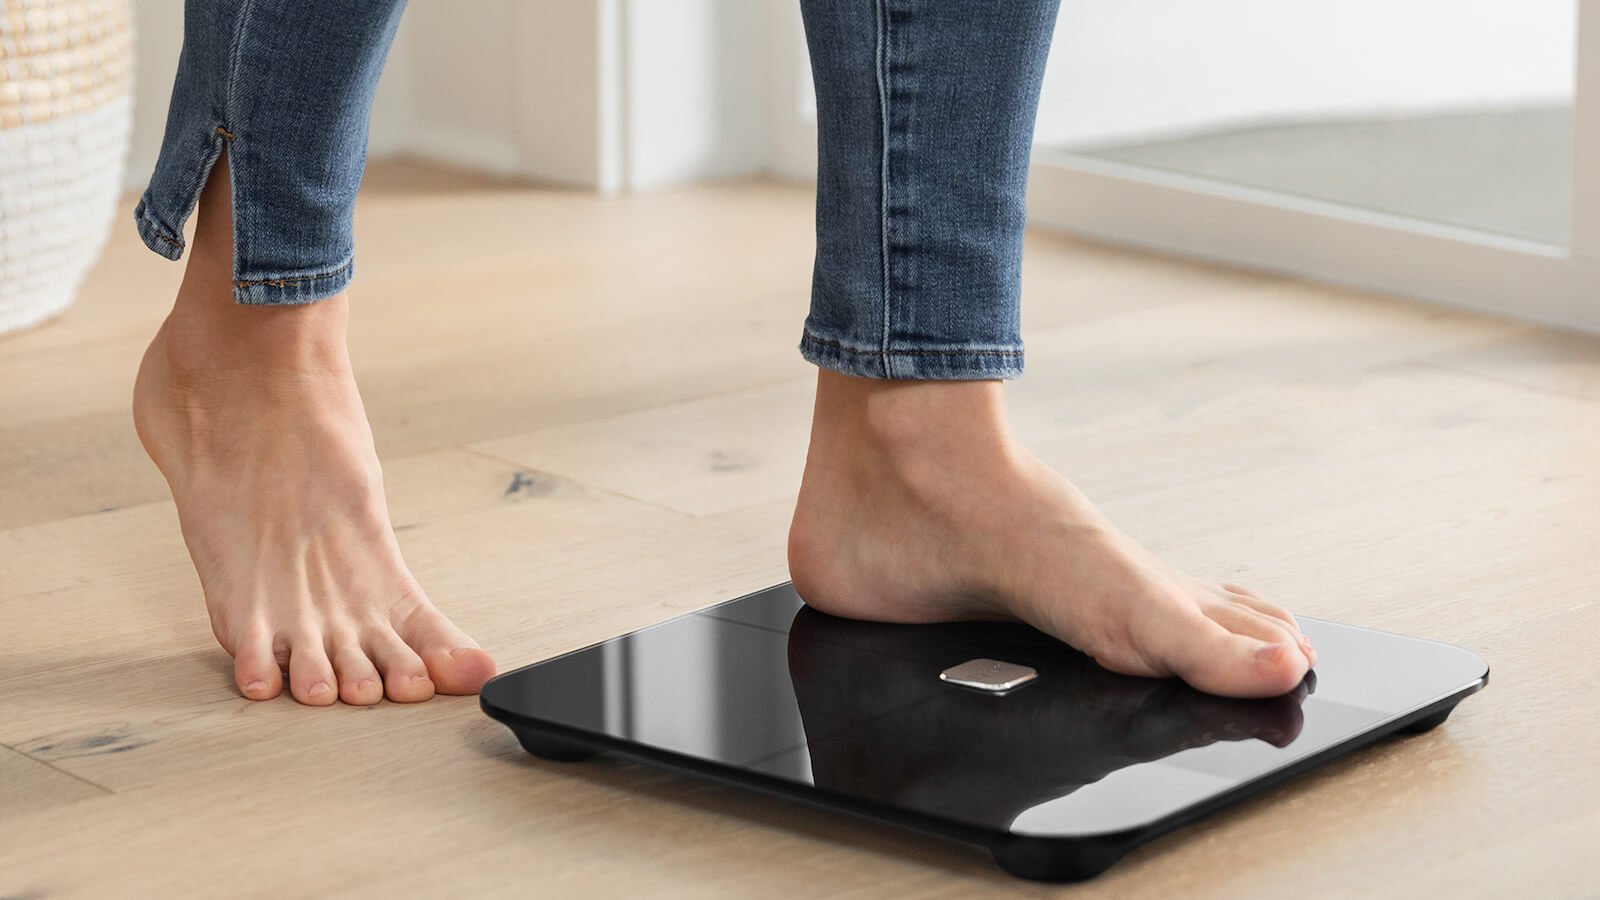 Wyze Scale body fat analyzer measures your lean body mass